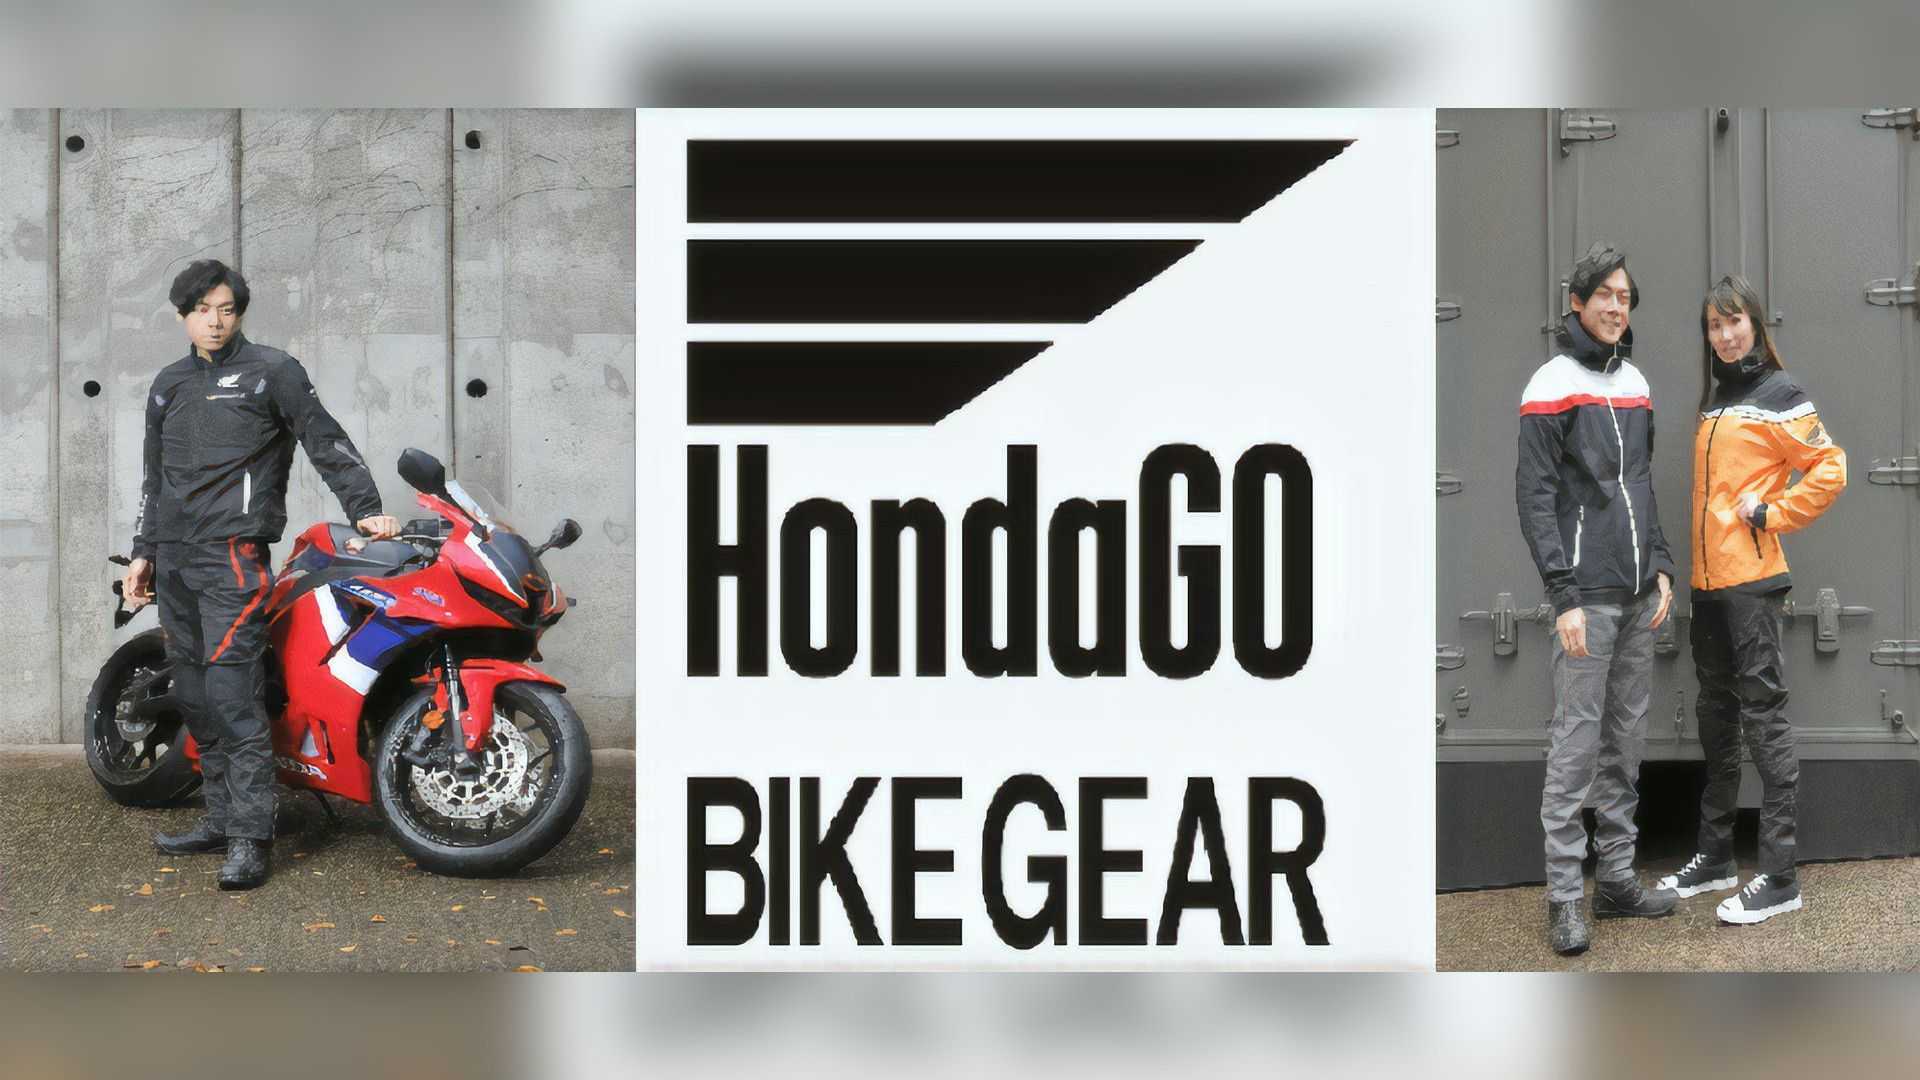 HondaGO Bike Gear